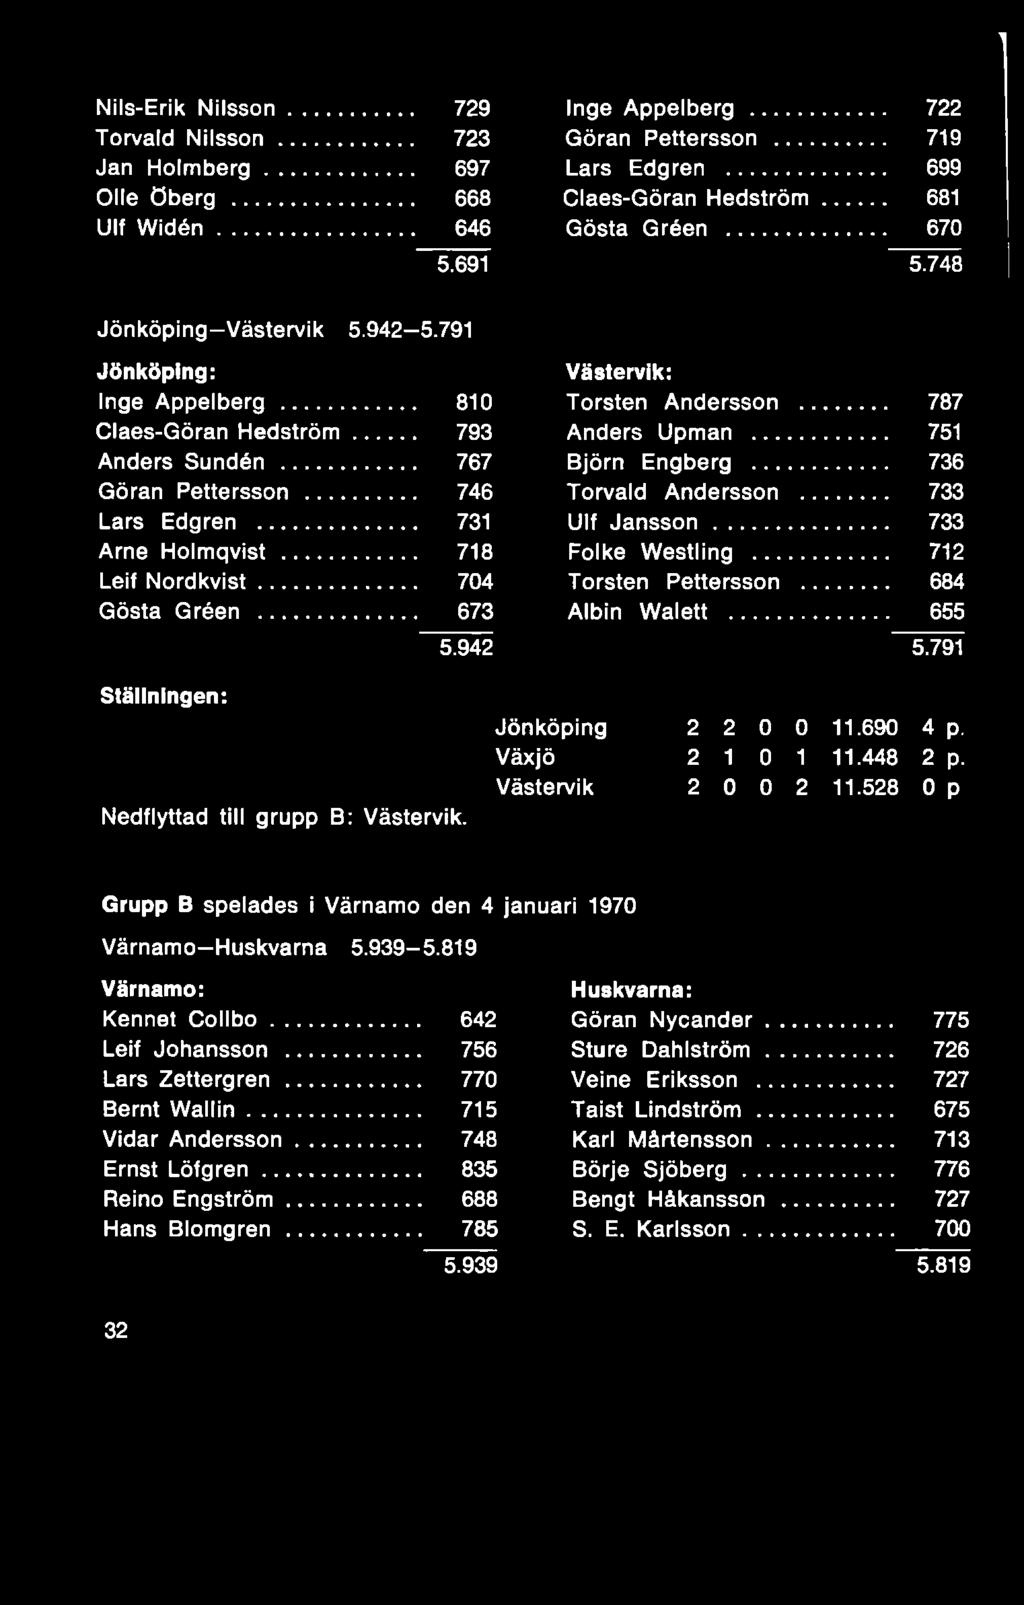 Växjö 2 1 0 1 11.448 2 p. Västervik 2 0 0 2 11.528 0 p Grupp B spelades i Värnamo den 4 januari 1970 Värnamo Huskvarna 5.939-5.819 Värnamo: Huskvarna: Kennet C o llb o... 642 Göran Nycander.